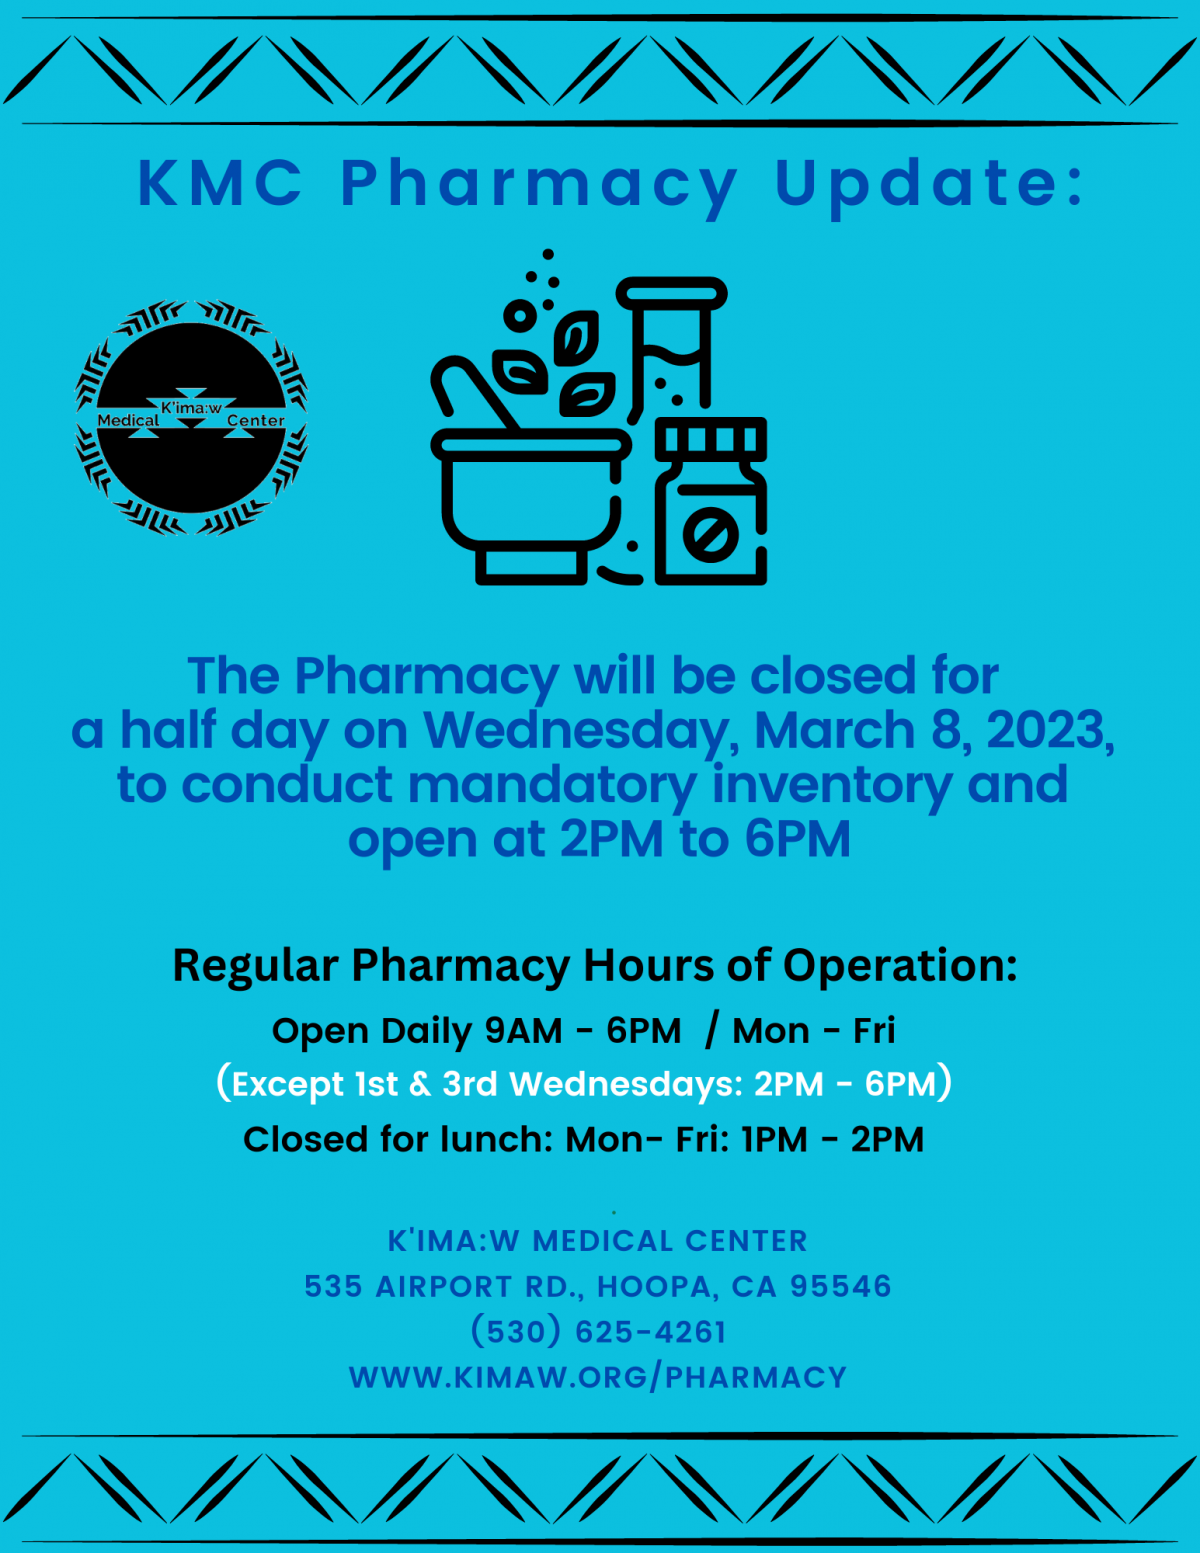 Pharmacy Update for 3.8.2023